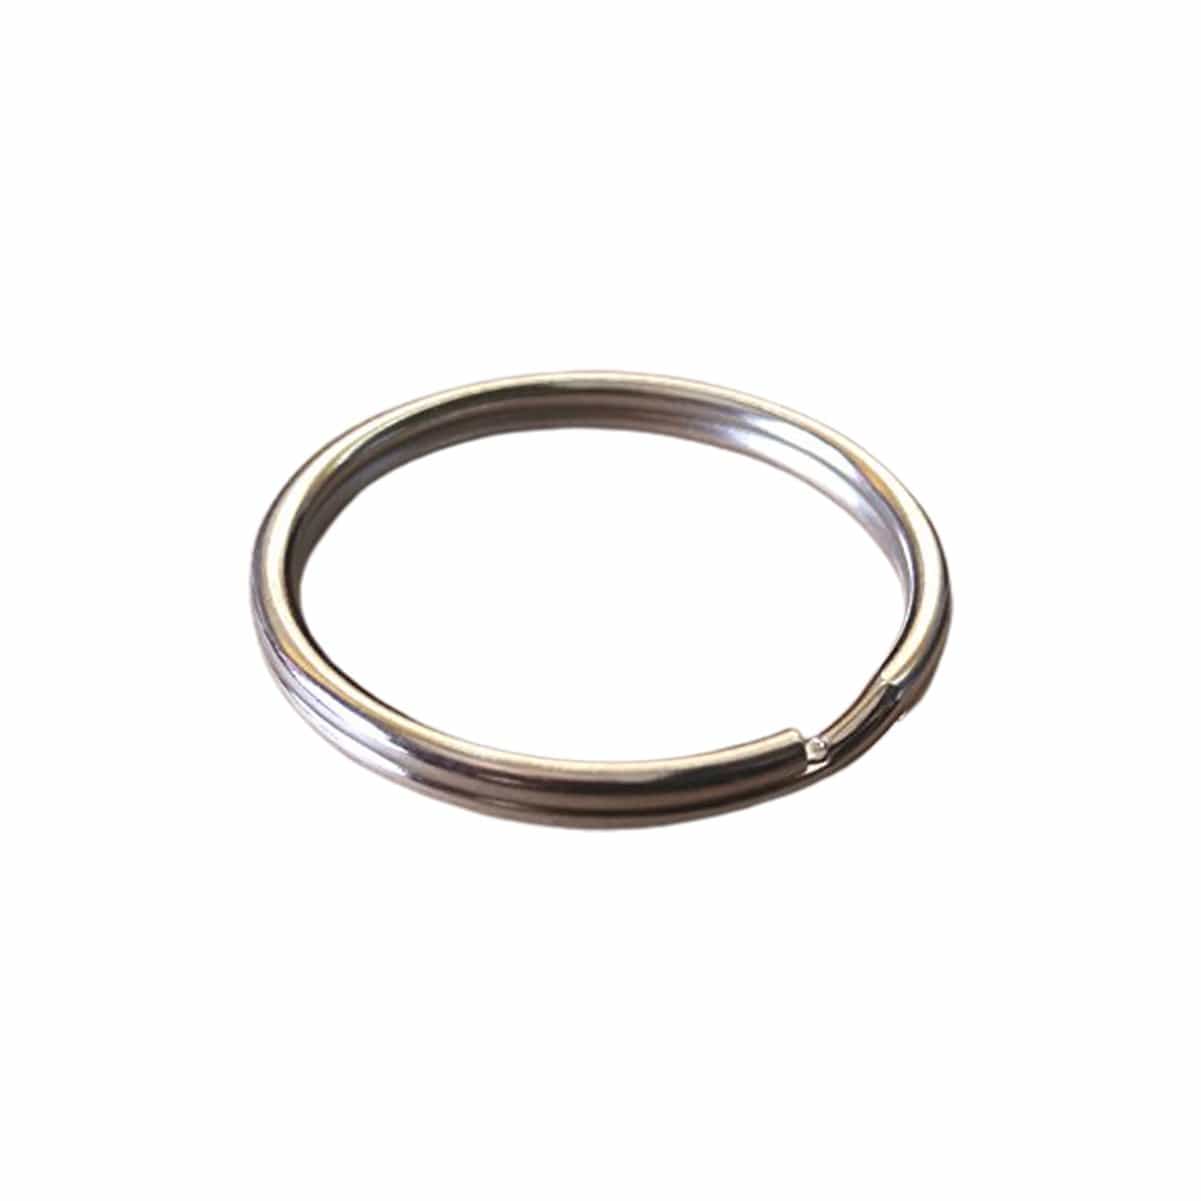 100 Round Split Ring Key Chains - 1" Inch Size - Heavy Duty Premium Key Rings in Bulk (SPID-9230) SPID-9230